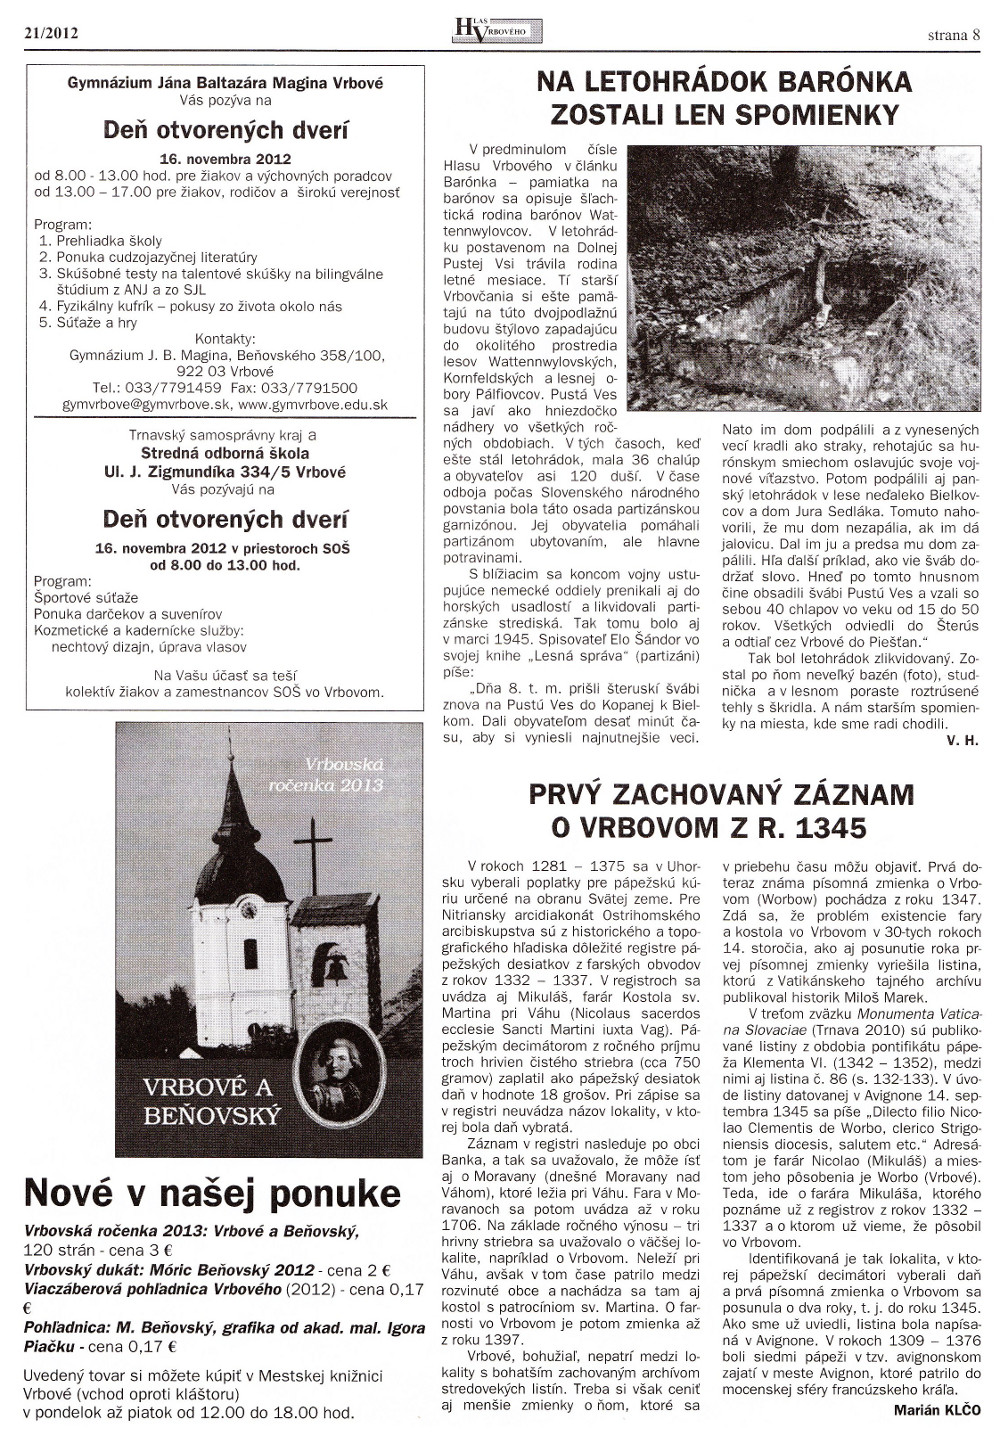 Hlas Vrbového 21/2012, strana 8